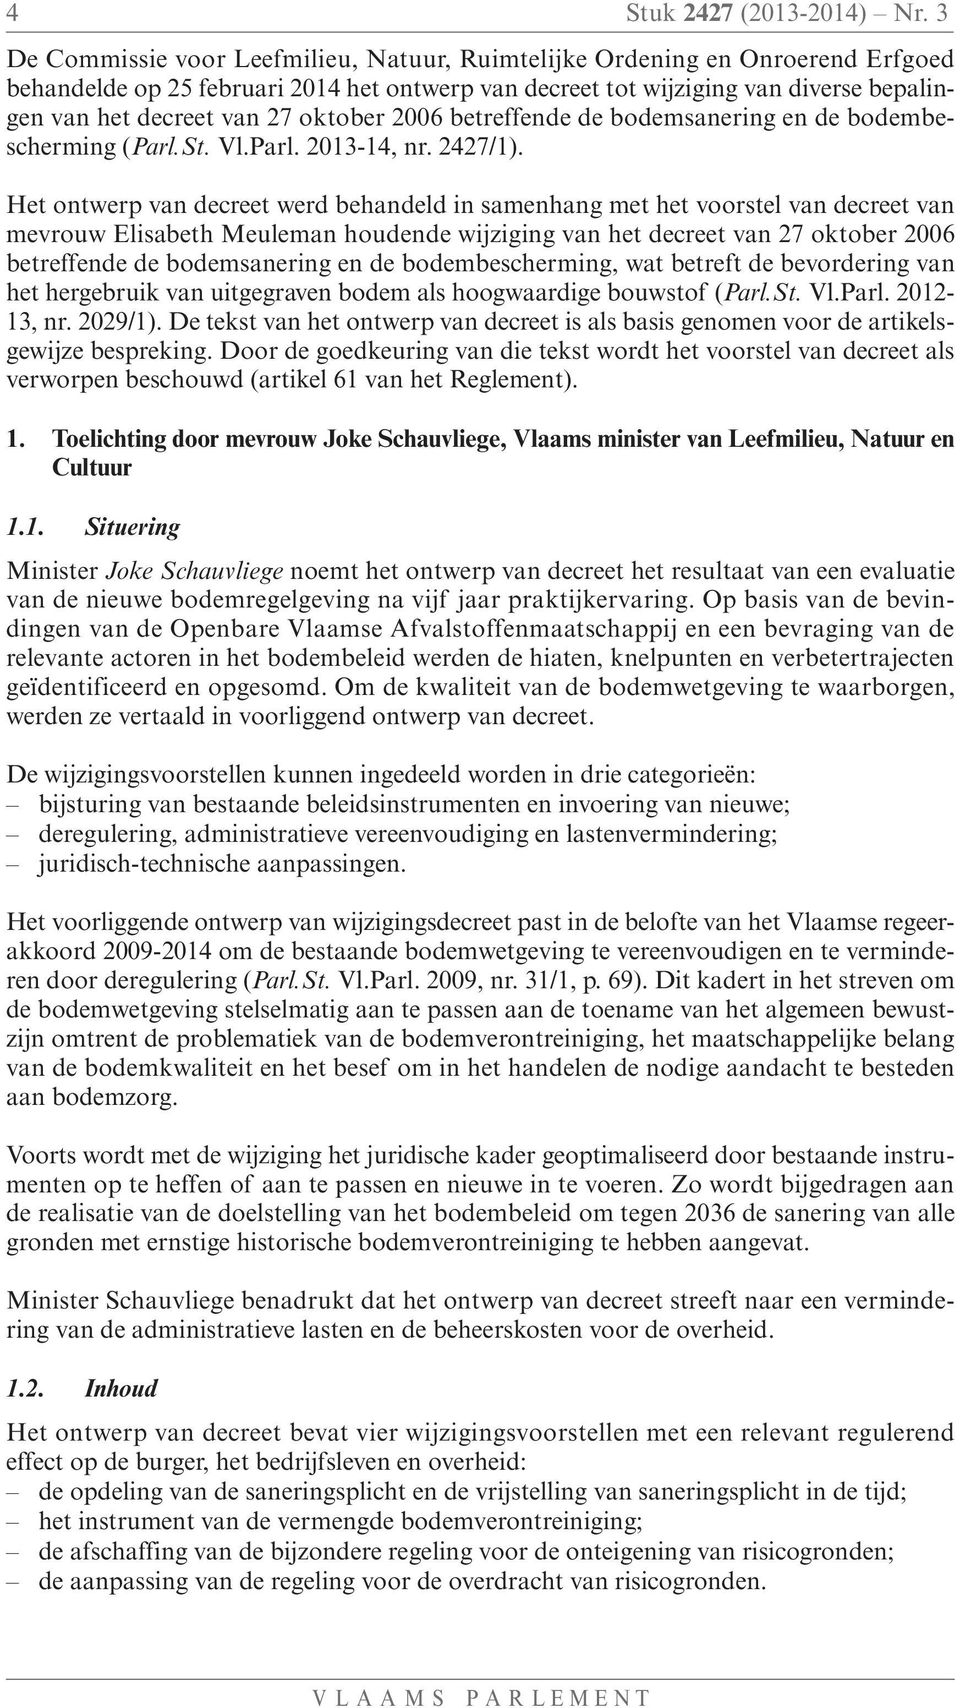 oktober 2006 betreffende de bodemsanering en de bodembescherming (Parl.St. Vl.Parl. 2013-14, nr. 2427/1).